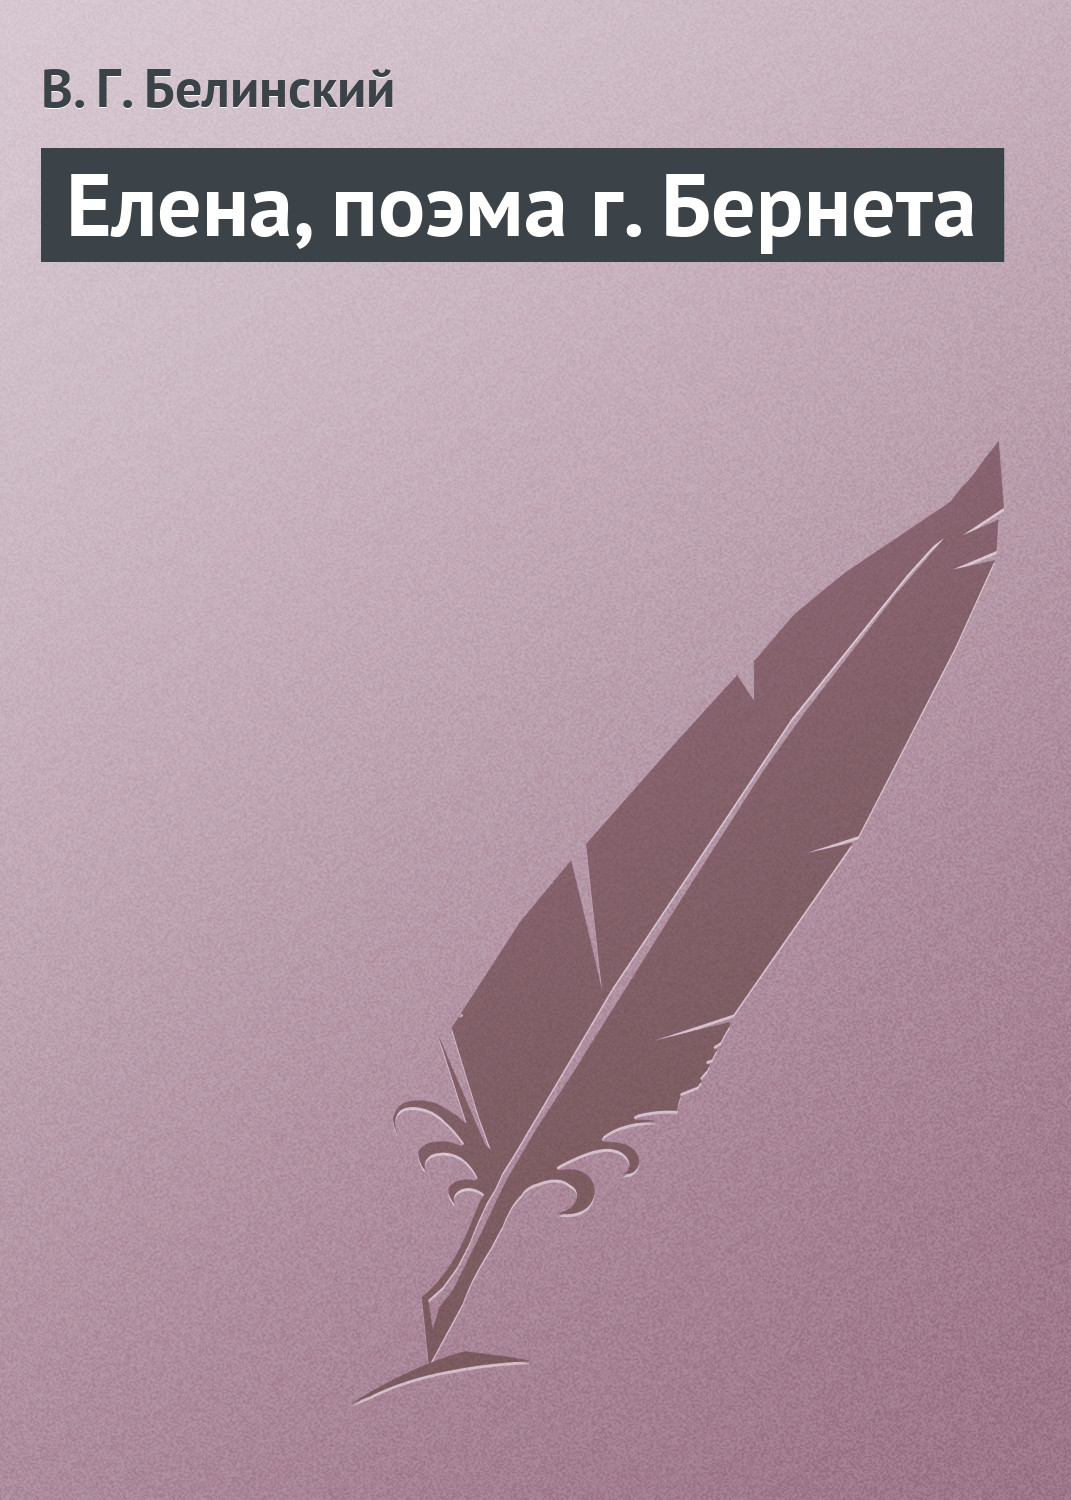 Книга Елена, поэма г. Бернета из серии , созданная Виссарион Белинский, может относится к жанру Критика. Стоимость книги Елена, поэма г. Бернета  с идентификатором 2900905 составляет 9.99 руб.